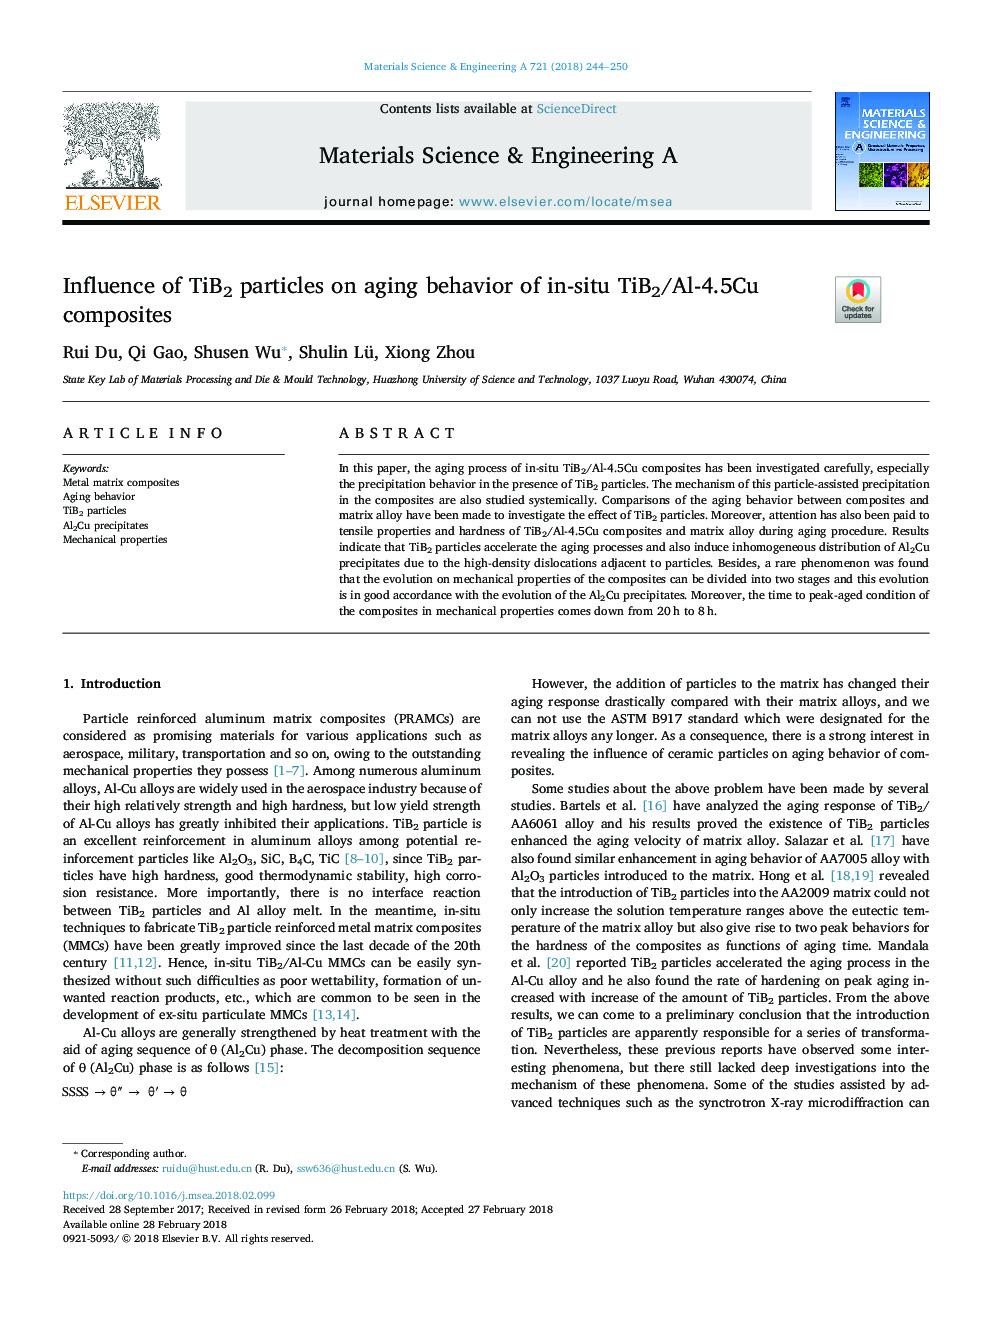 Influence of TiB2 particles on aging behavior of in-situ TiB2/Al-4.5Cu composites